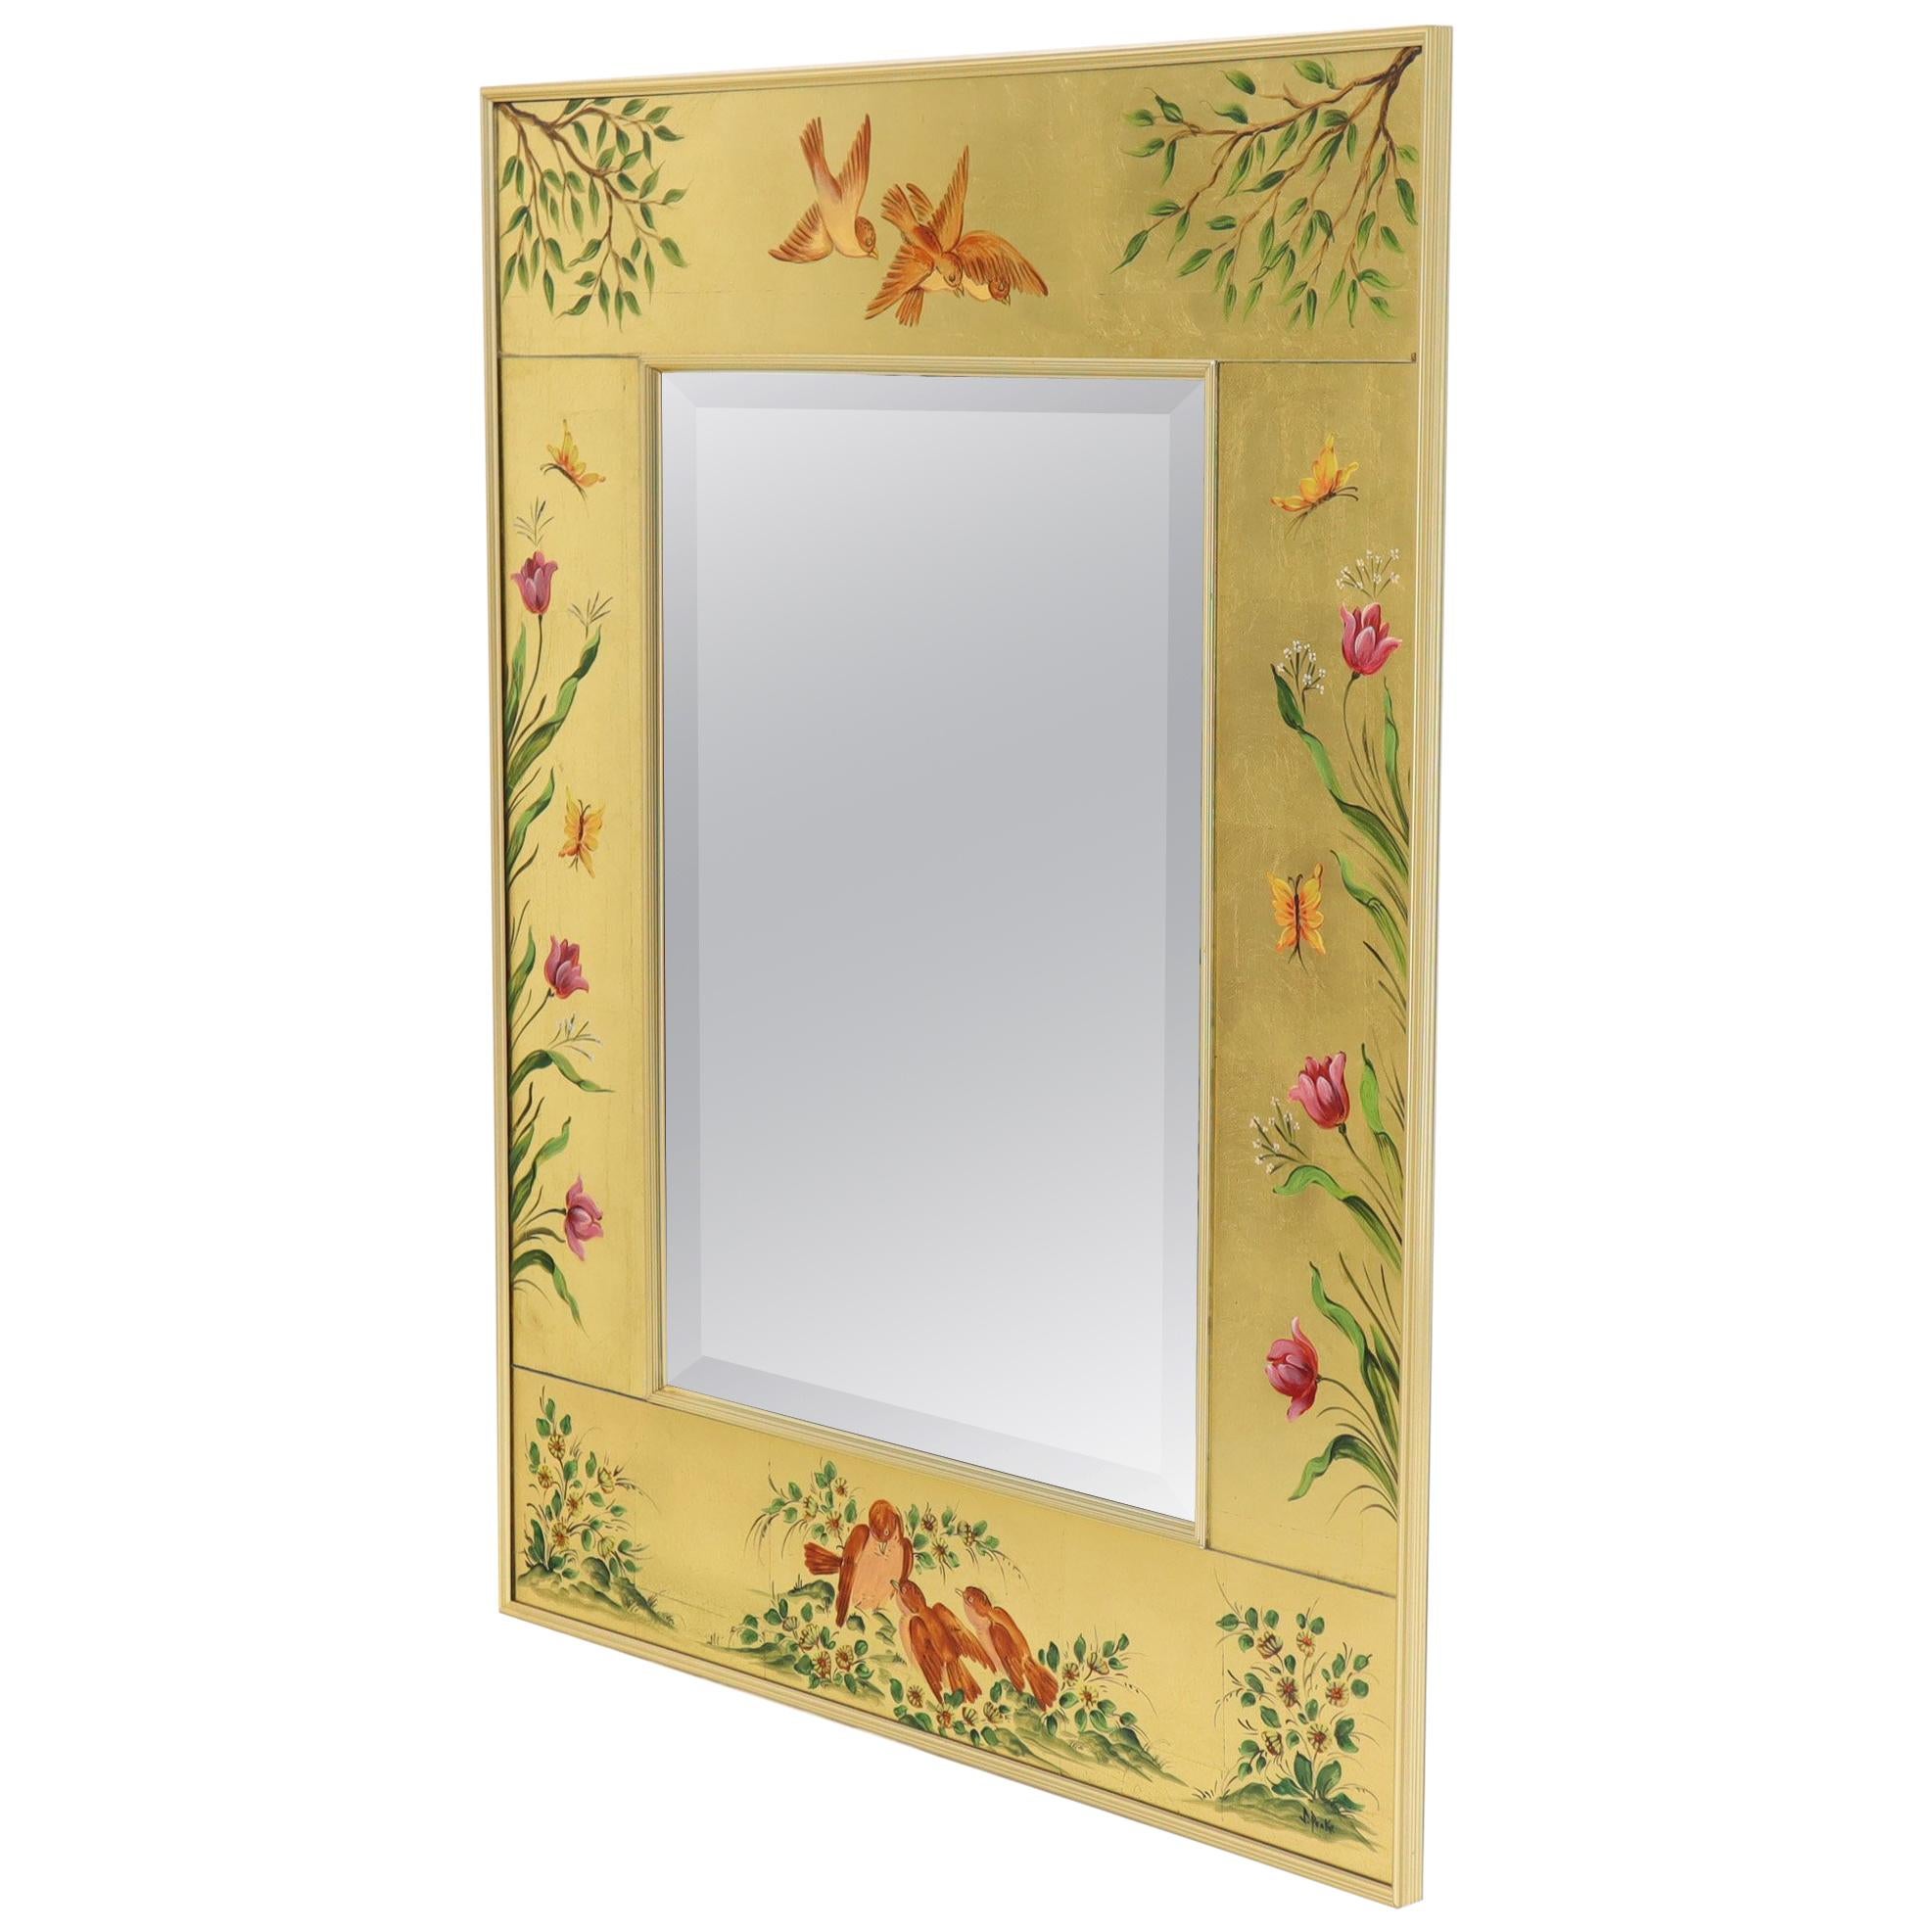 Mirro décoratif à cadre rectangulaire en feuilles d'or peint à l'envers